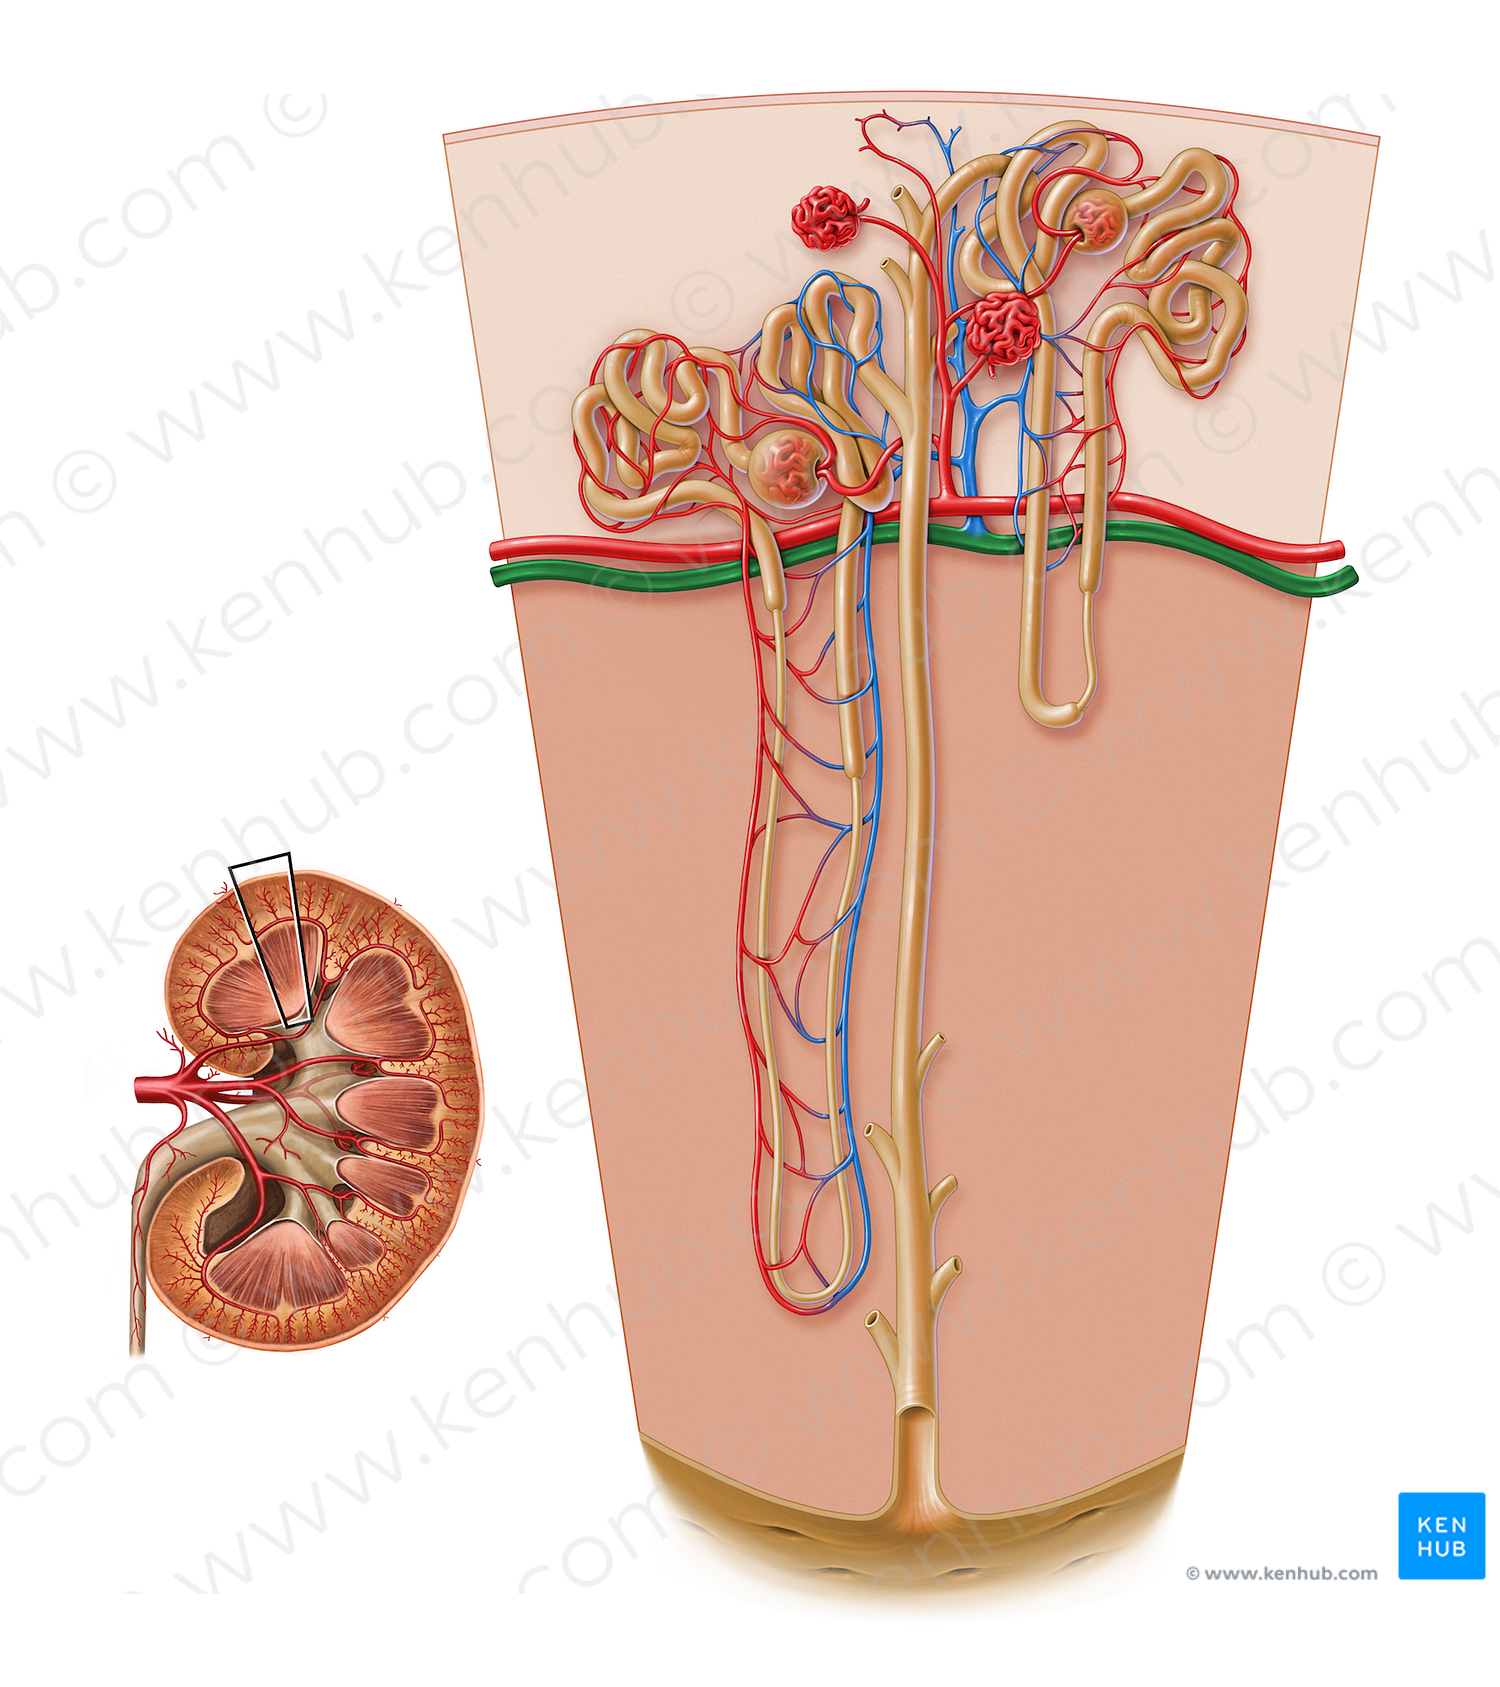 Arcuate vein of kidney (#17208)